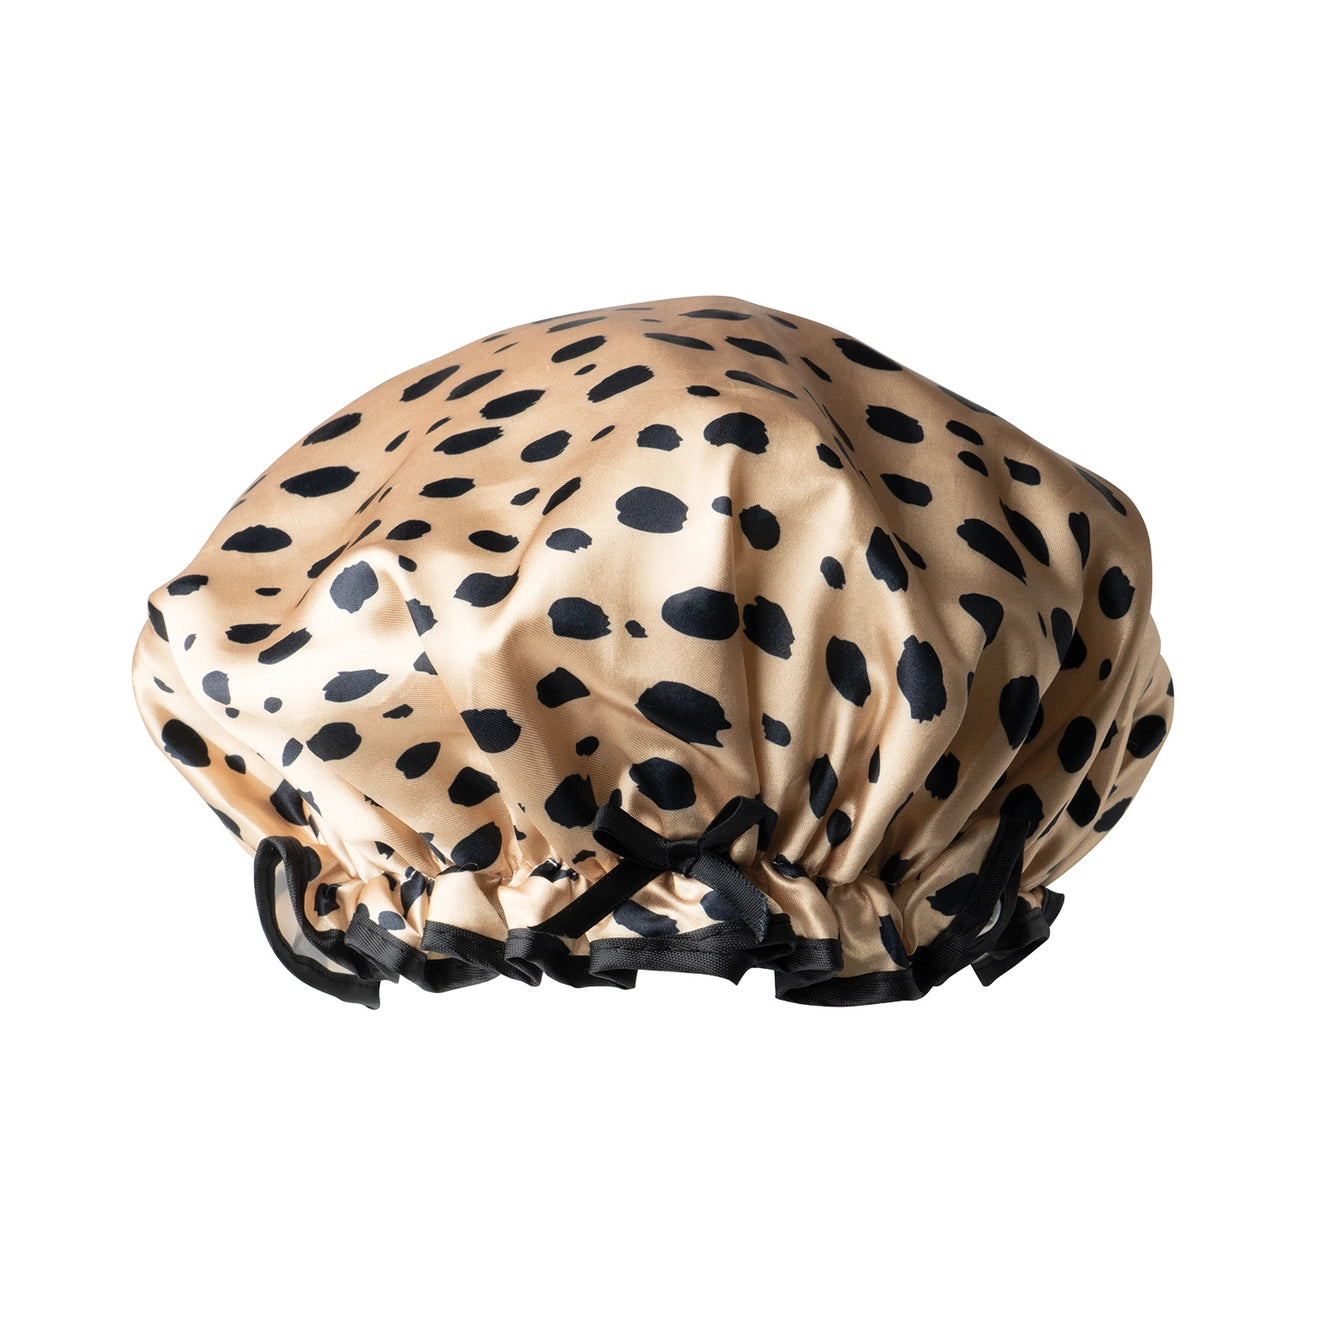 tan and black cheetah printed shower cap